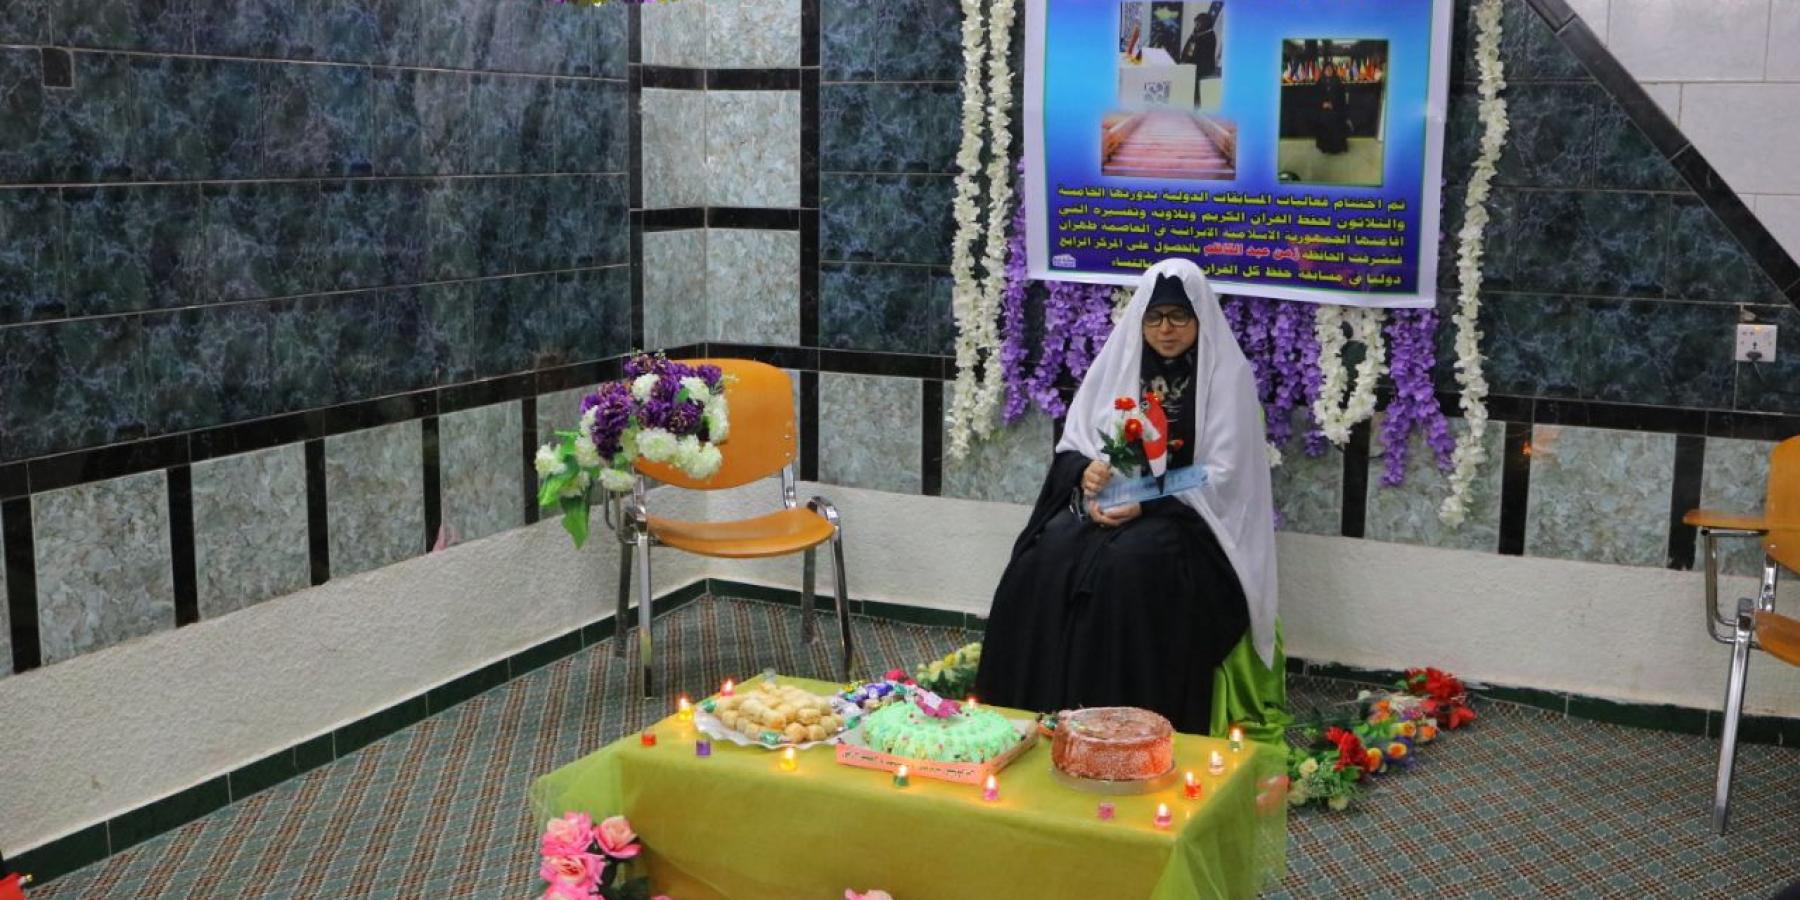 منتسبة من العتبة العلوية المقدسة تنال مرتبة متقدمة في المسابقة القرآنية الدولية الخامسة المقامة في إيران